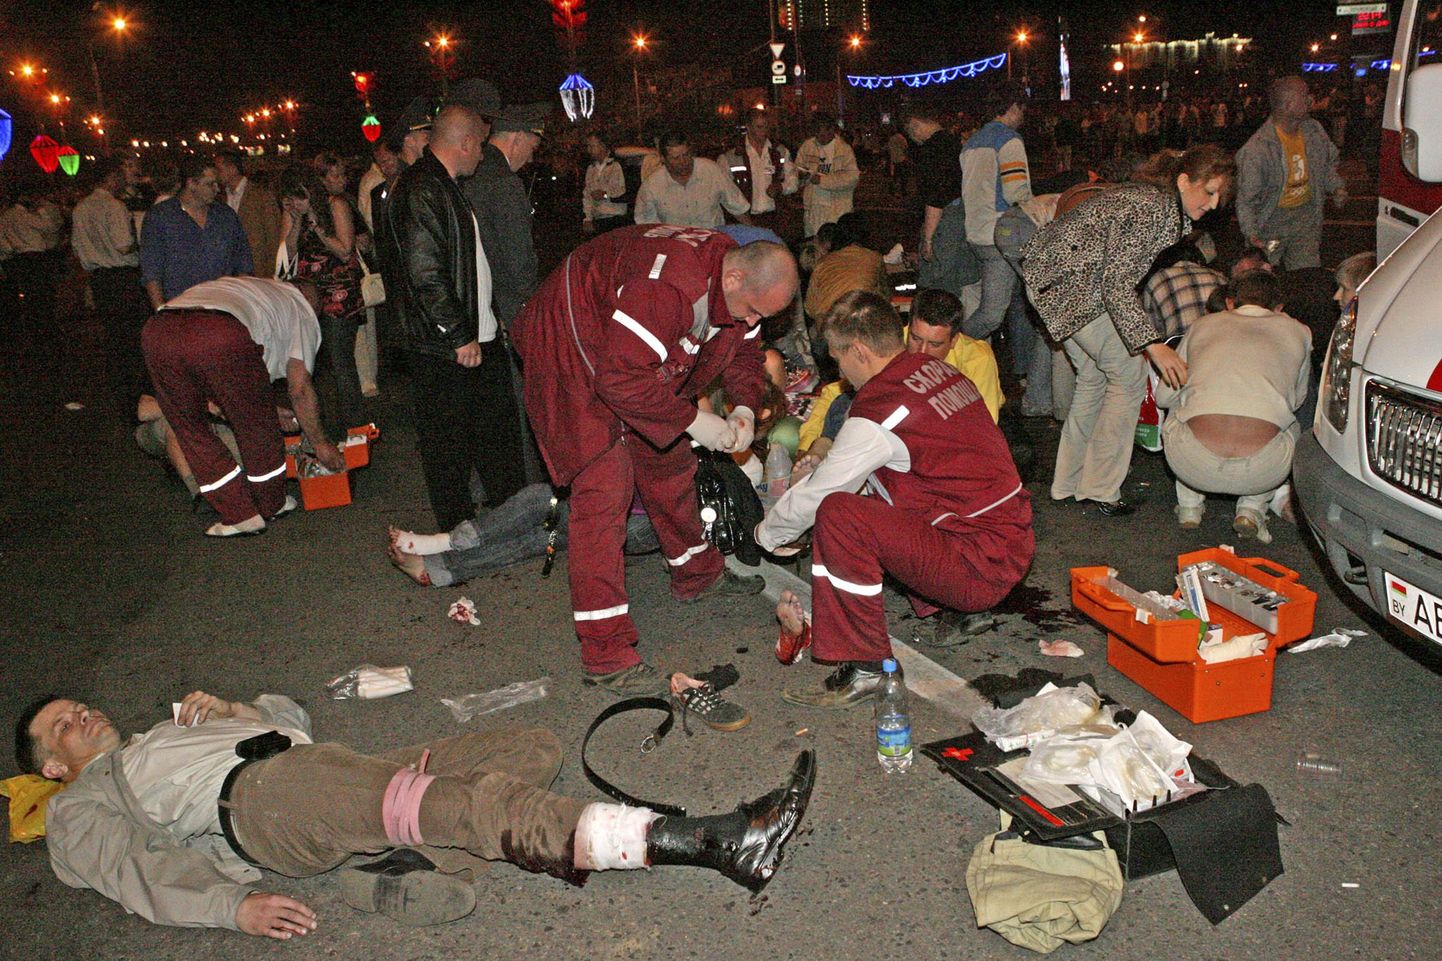 Minski kiirabitöötajatel on käed tööd täis. Plahvatuses sai viga umbes 50 inimest.